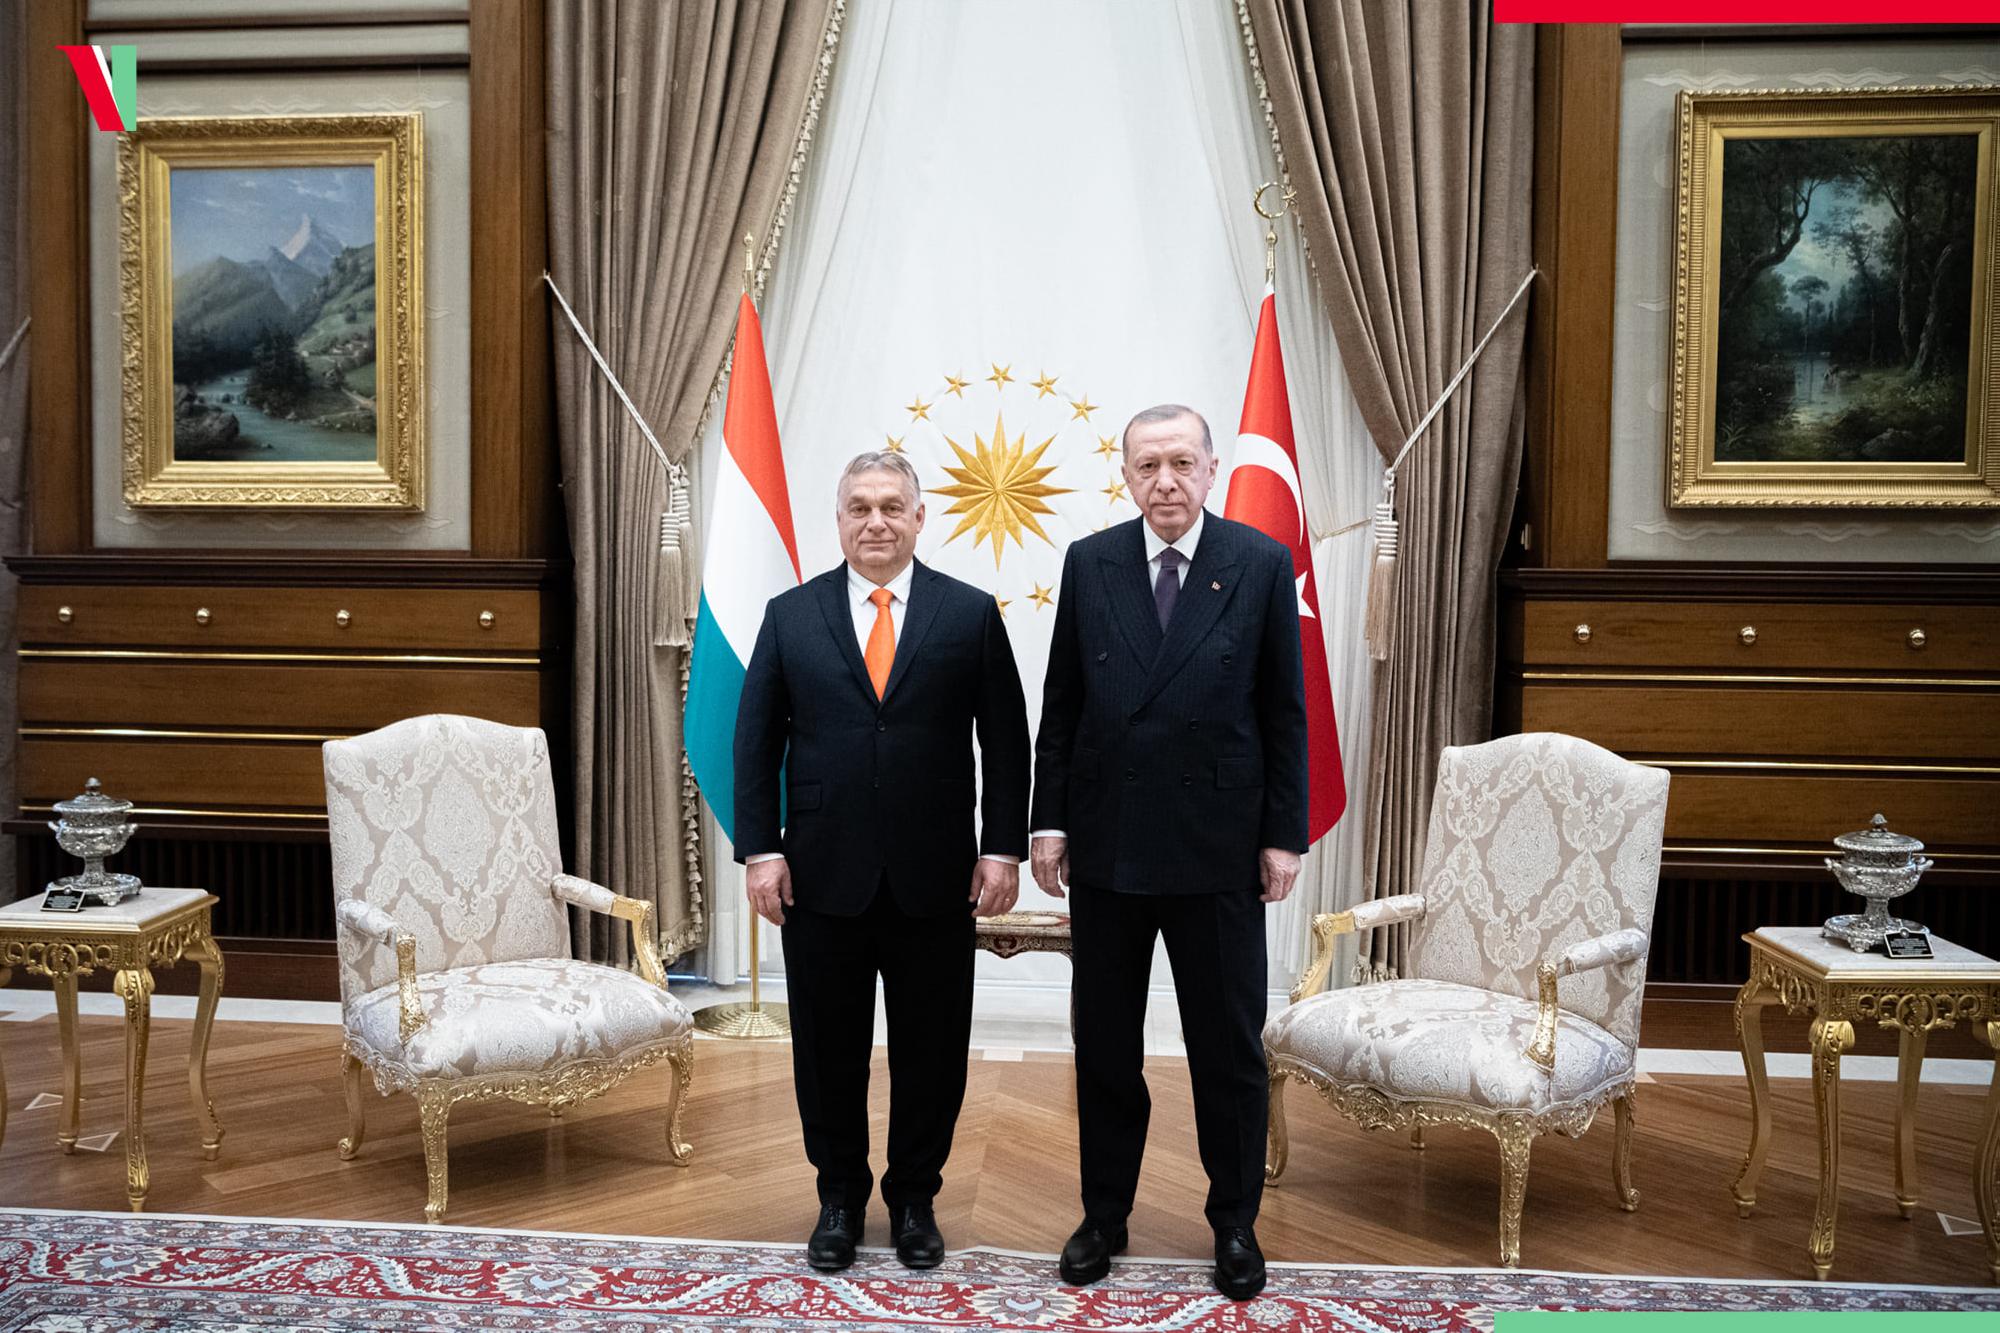 Ankarába utazott Orbán Viktor, ahol részt vesz a török elnök beiktatási ünnepségén